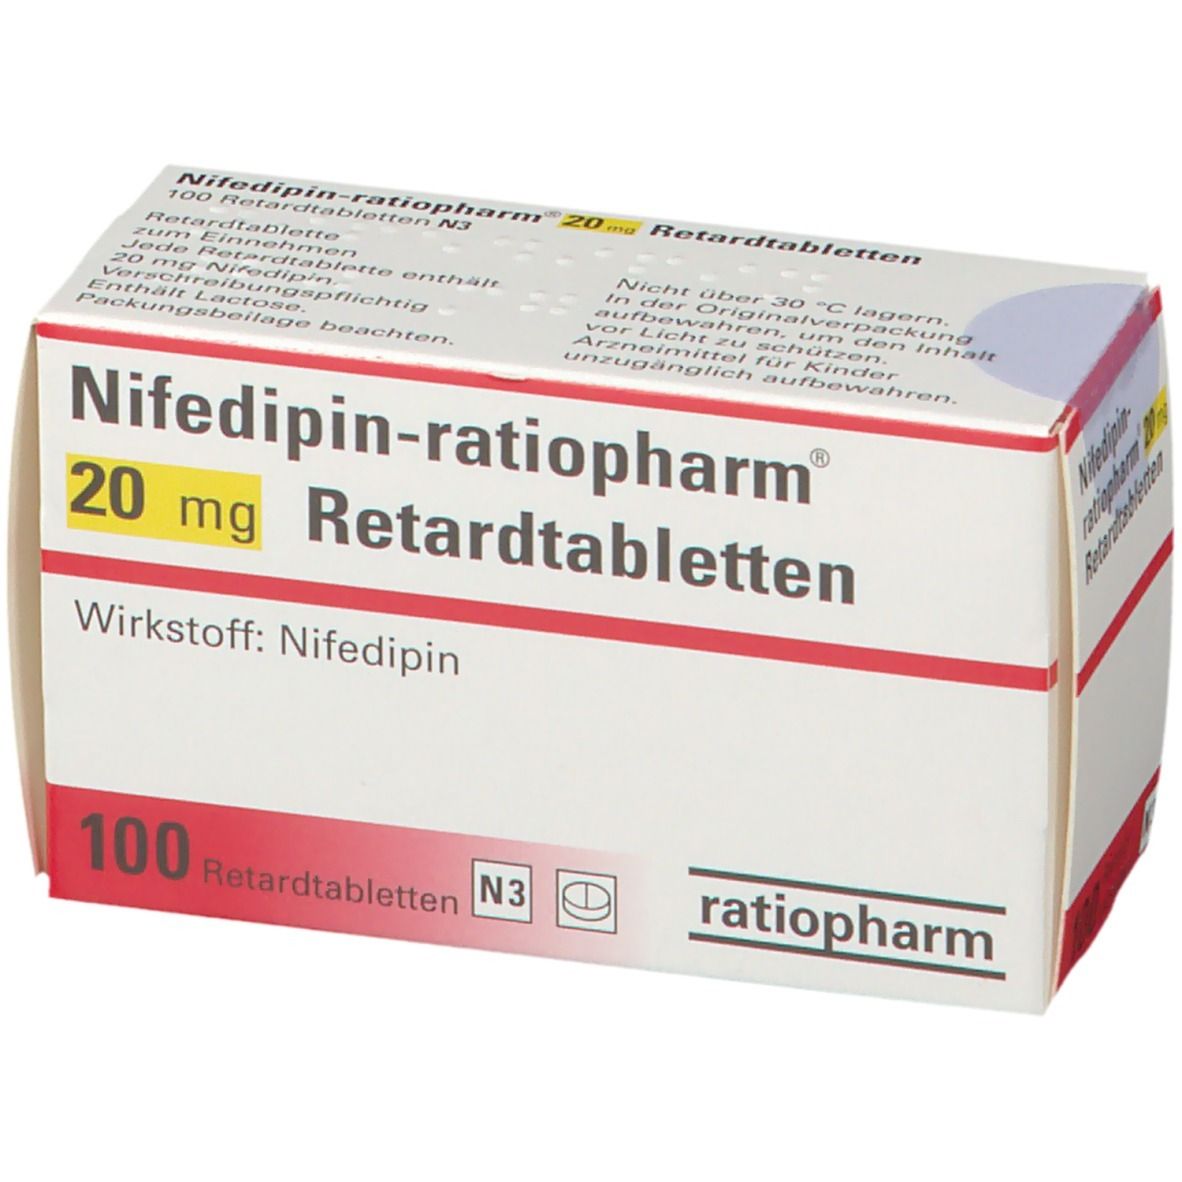 Nifedipin-ratiopharm® 20 mg